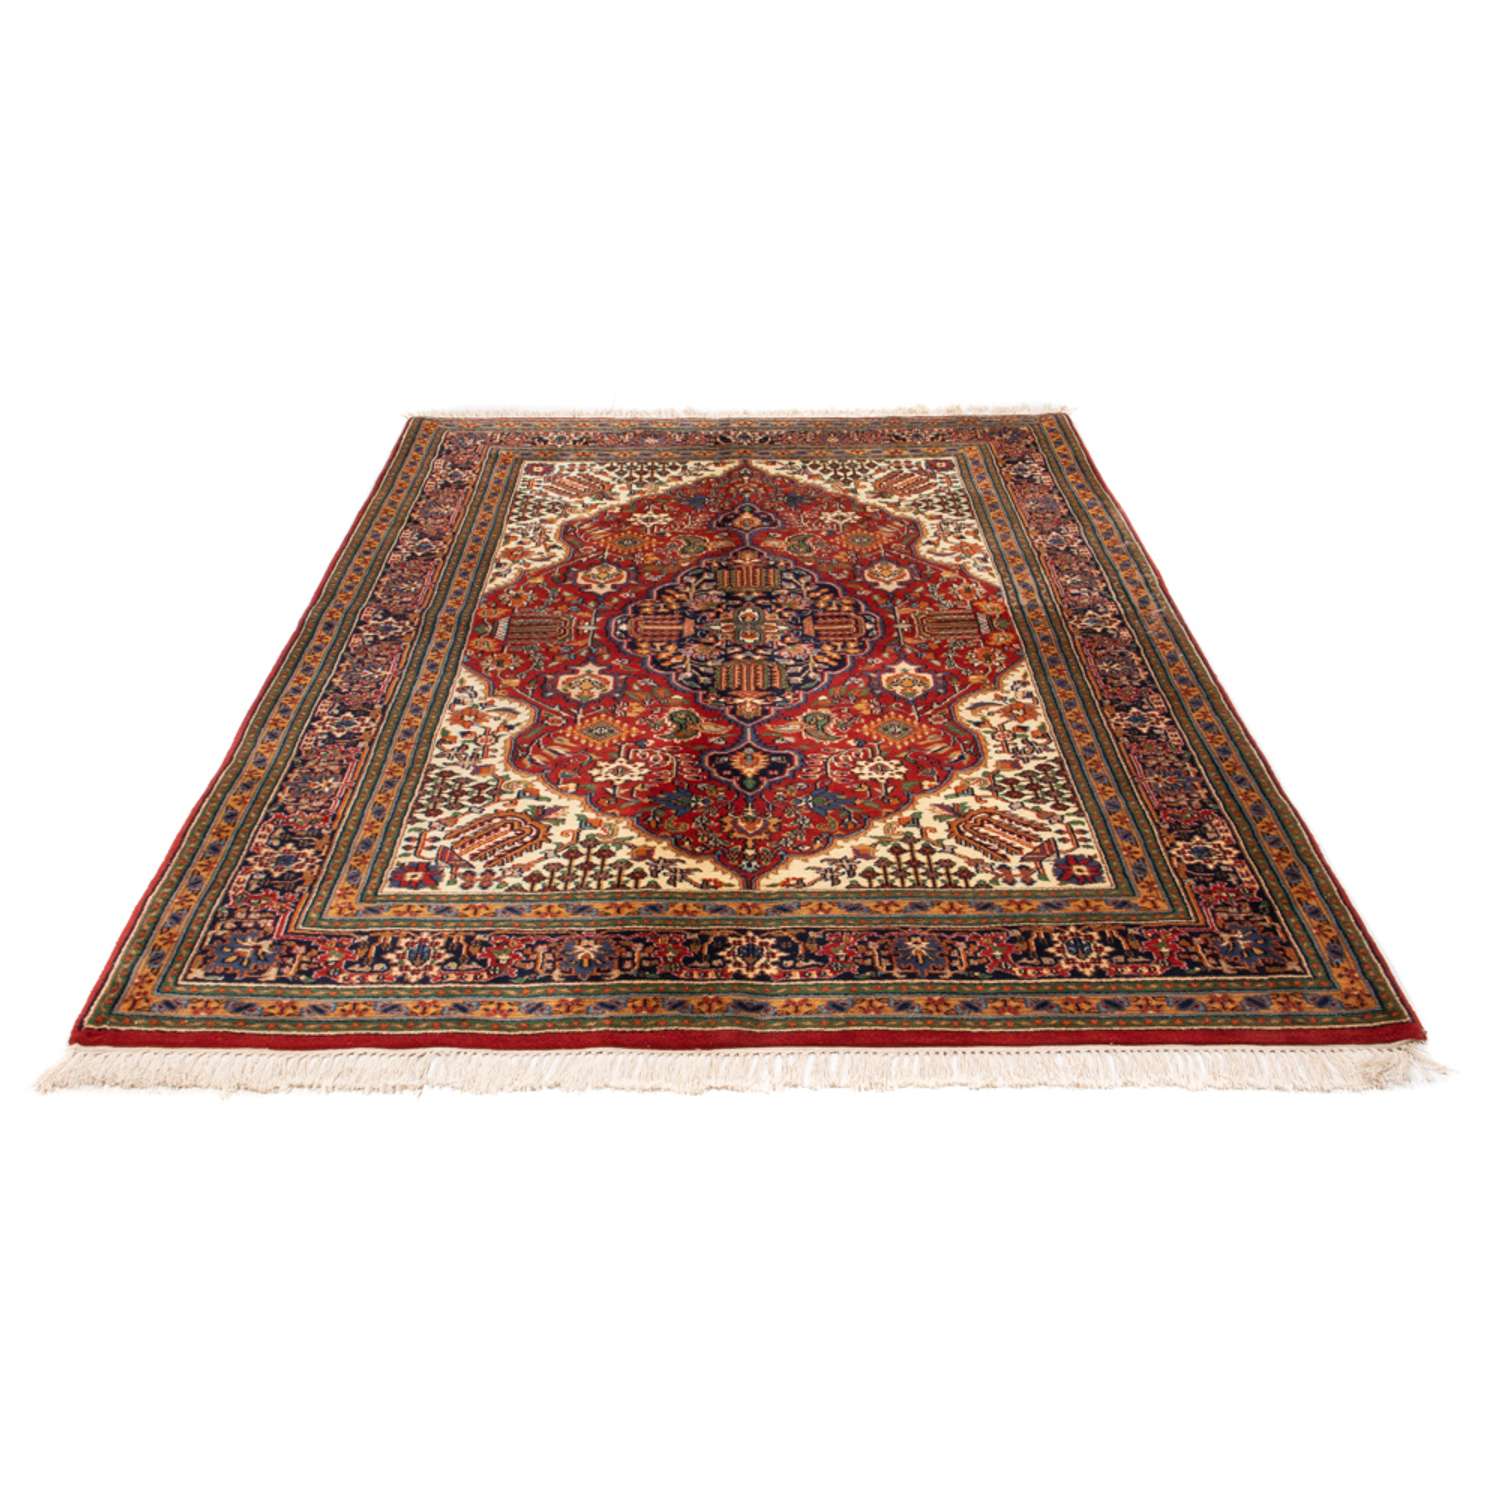 Oosters tapijt - Indus - 235 x 166 cm - rood